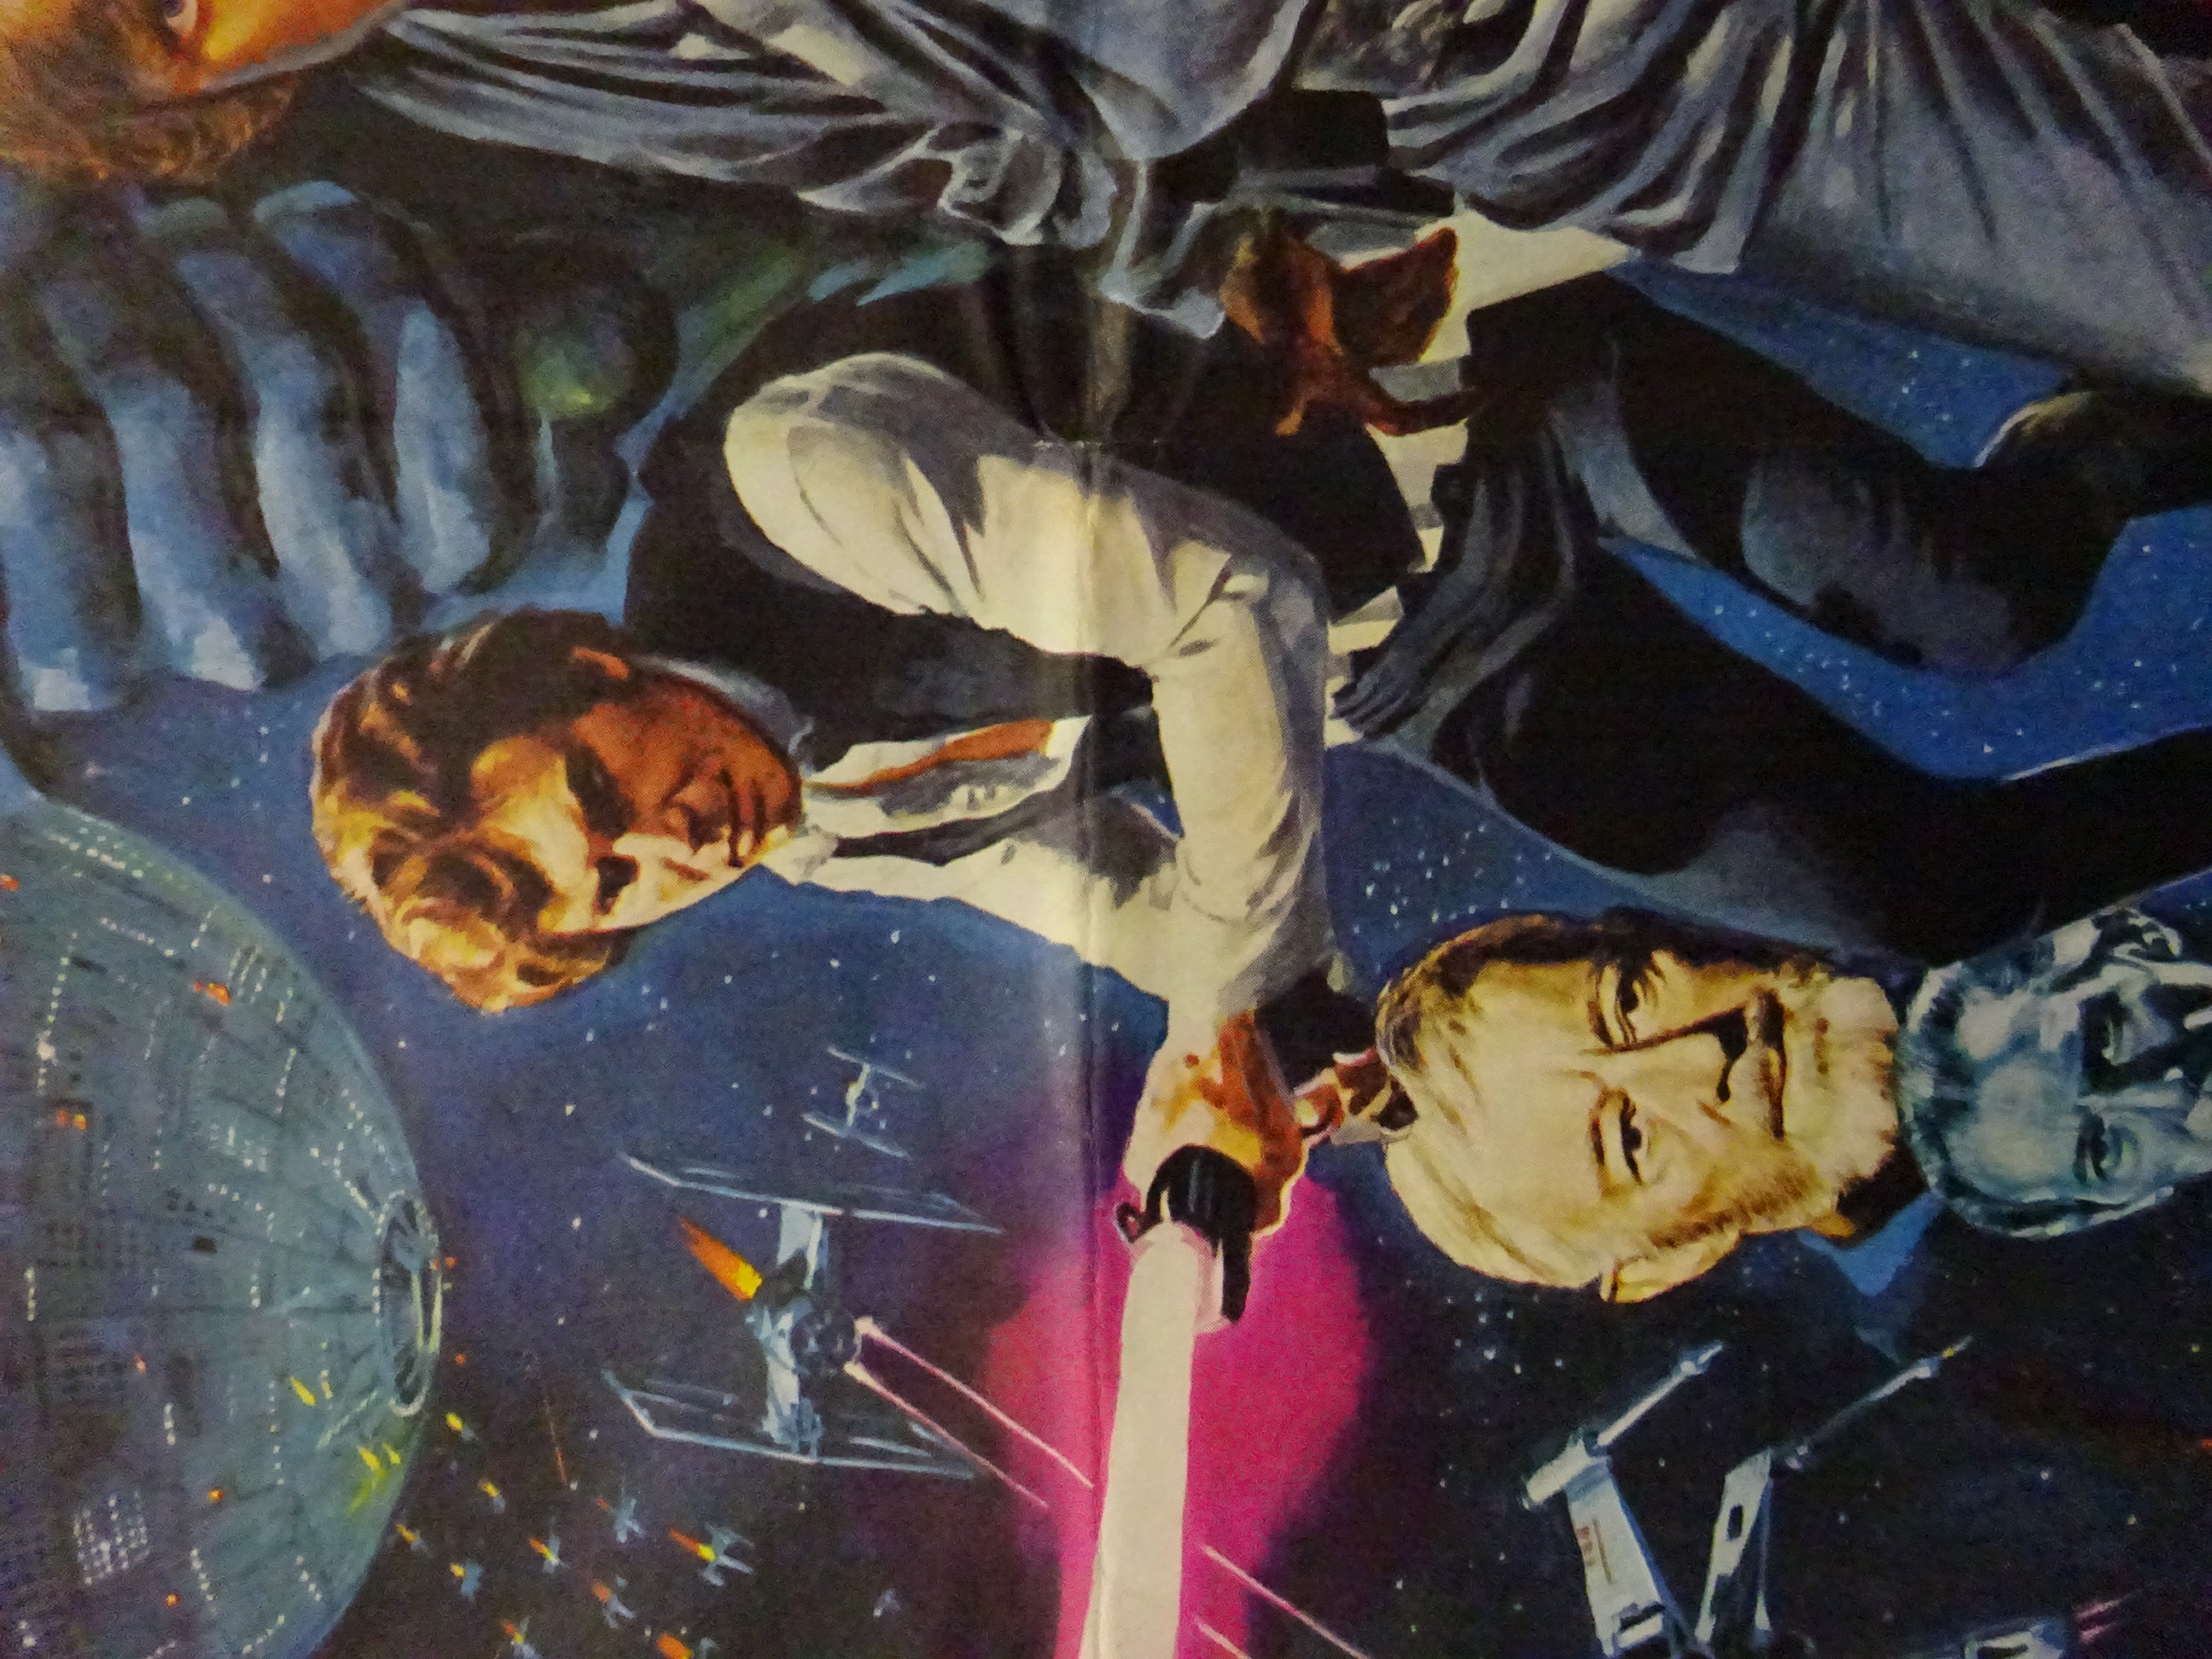 'Star Wars' (1977) original British Quad film poster with art work by Tom Chantrell, - Bild 3 aus 9